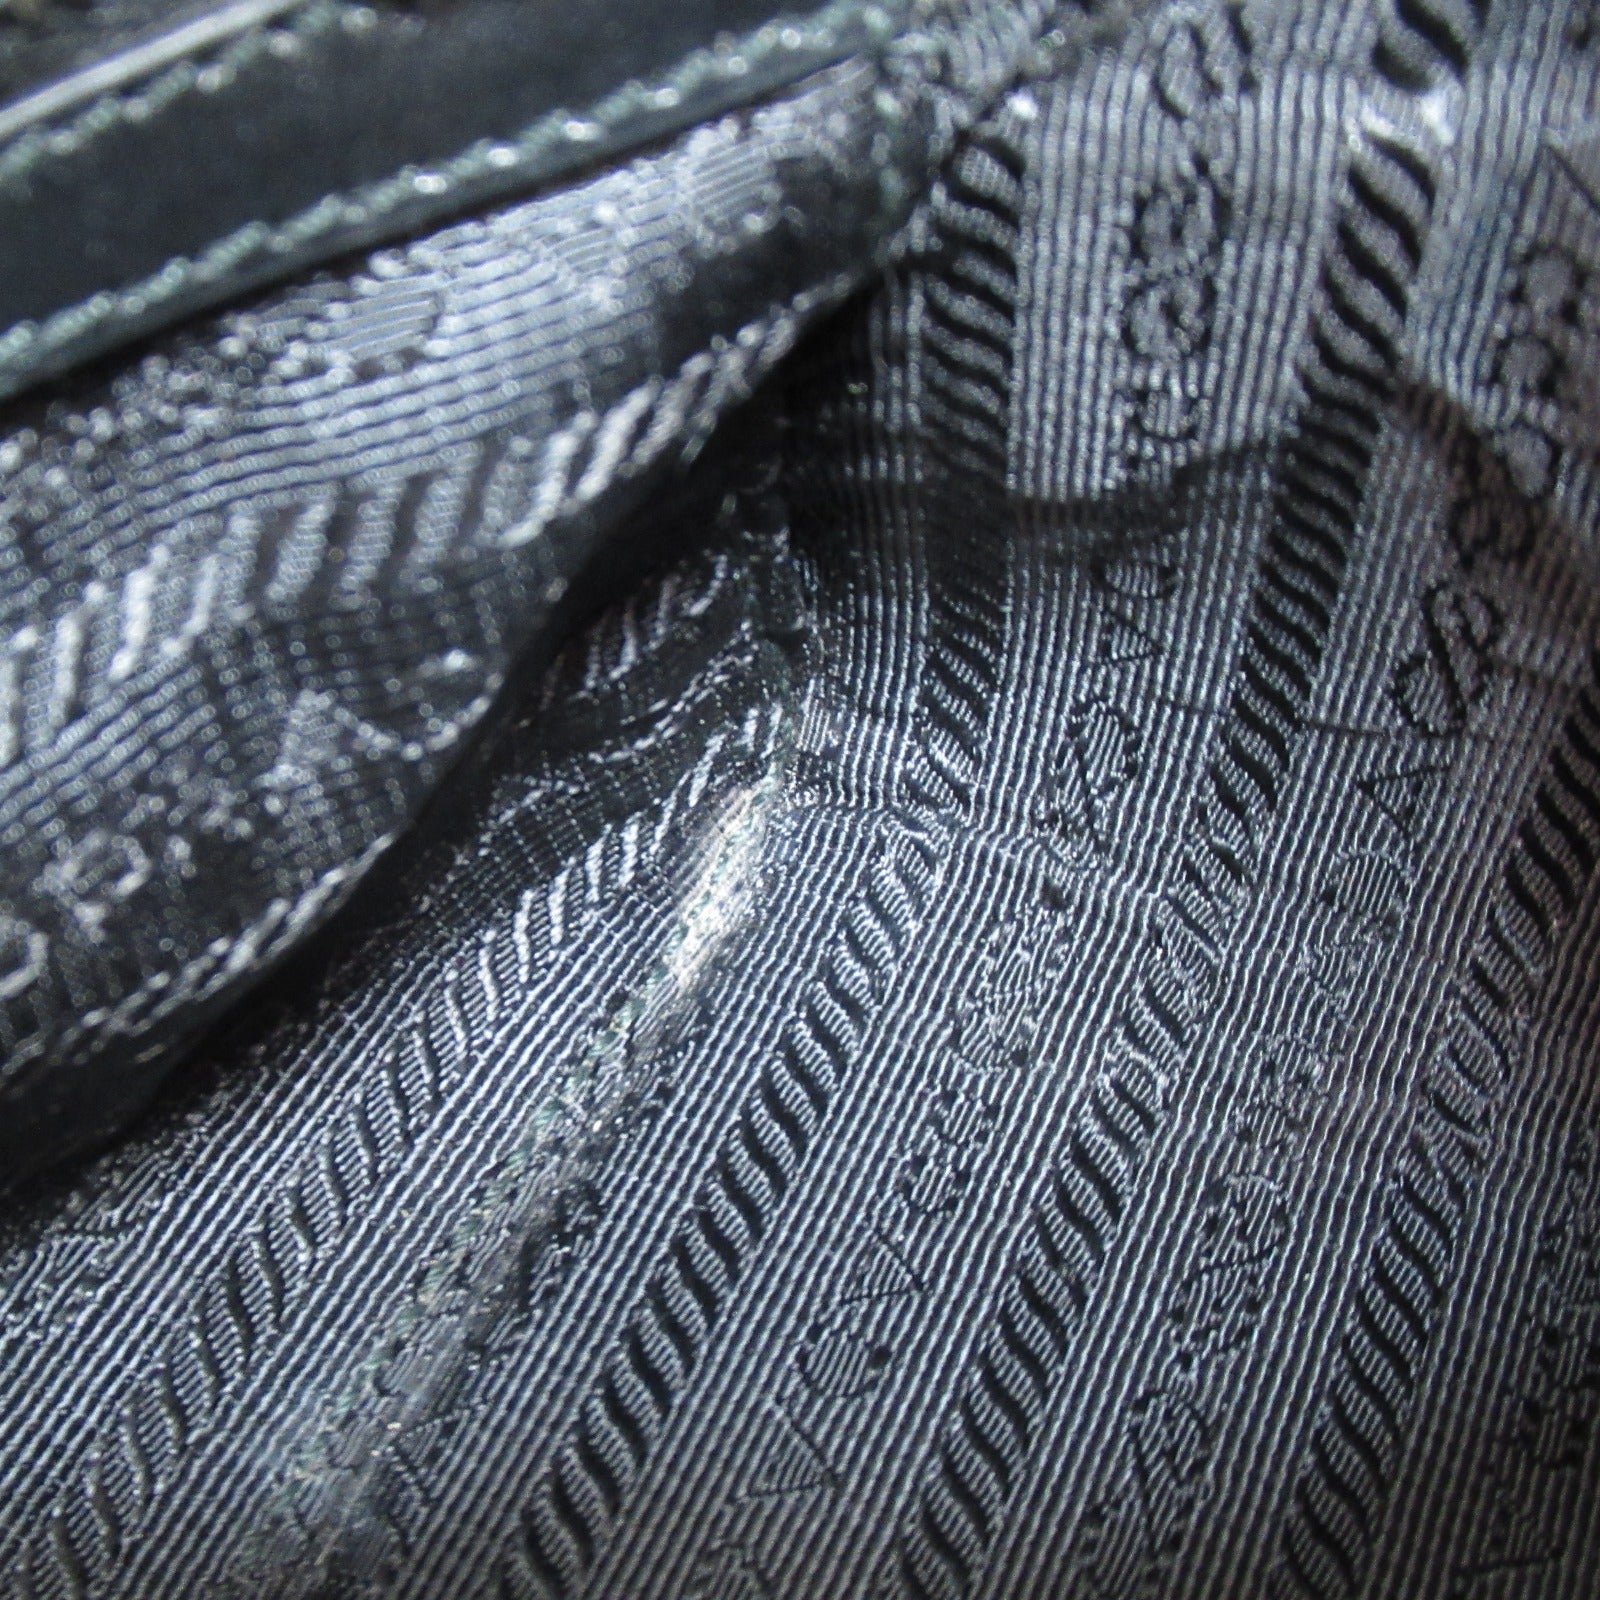 Prada Prada Chain Shoulder Bag Shoulder Bag Leather  Black